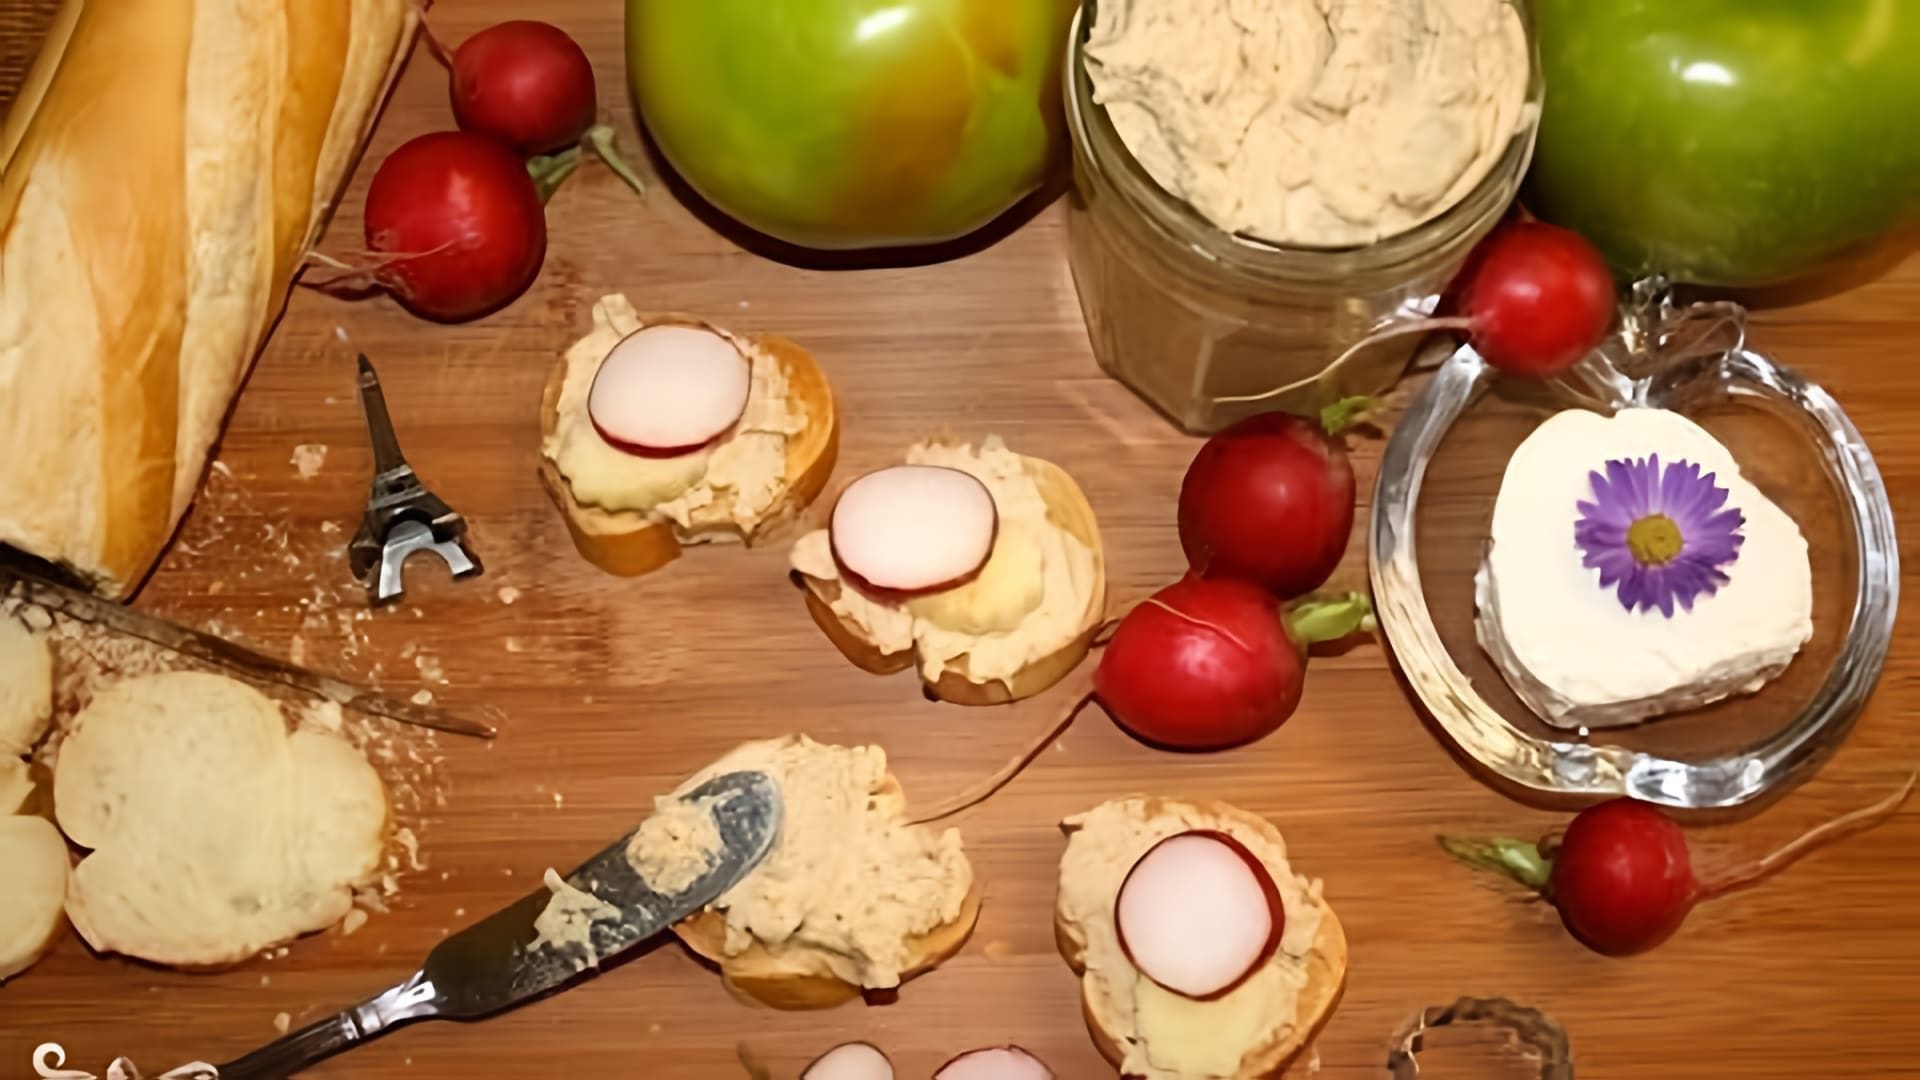 В этом видео демонстрируется рецепт приготовления паштета из куриного мяса со специями